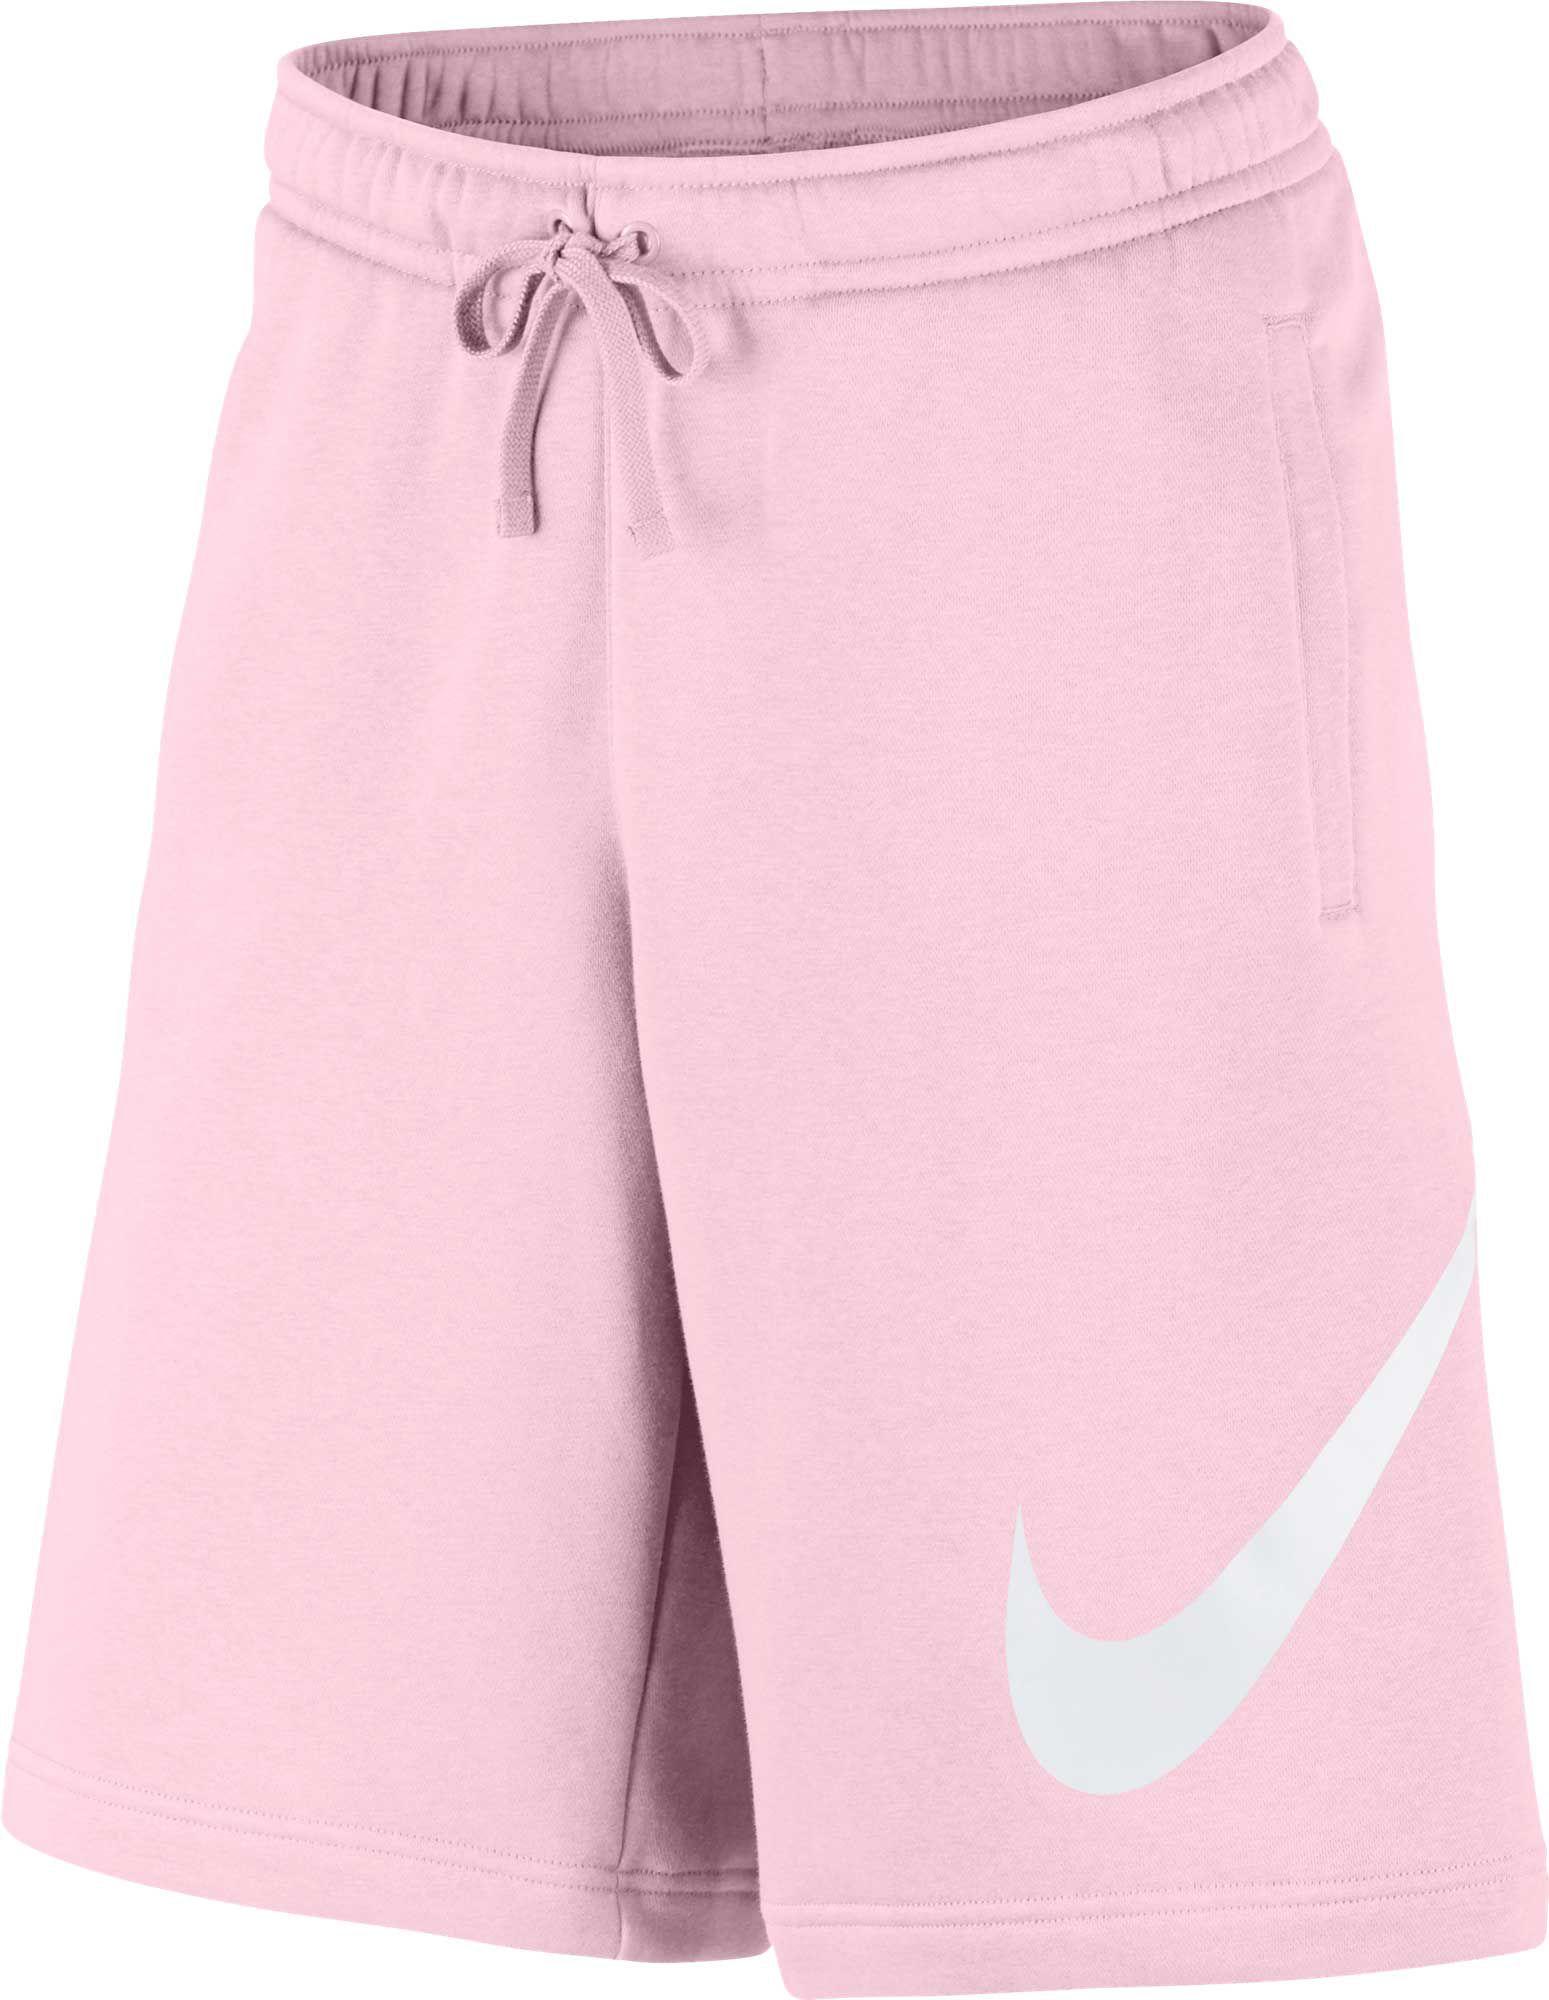 pink nike cotton shorts